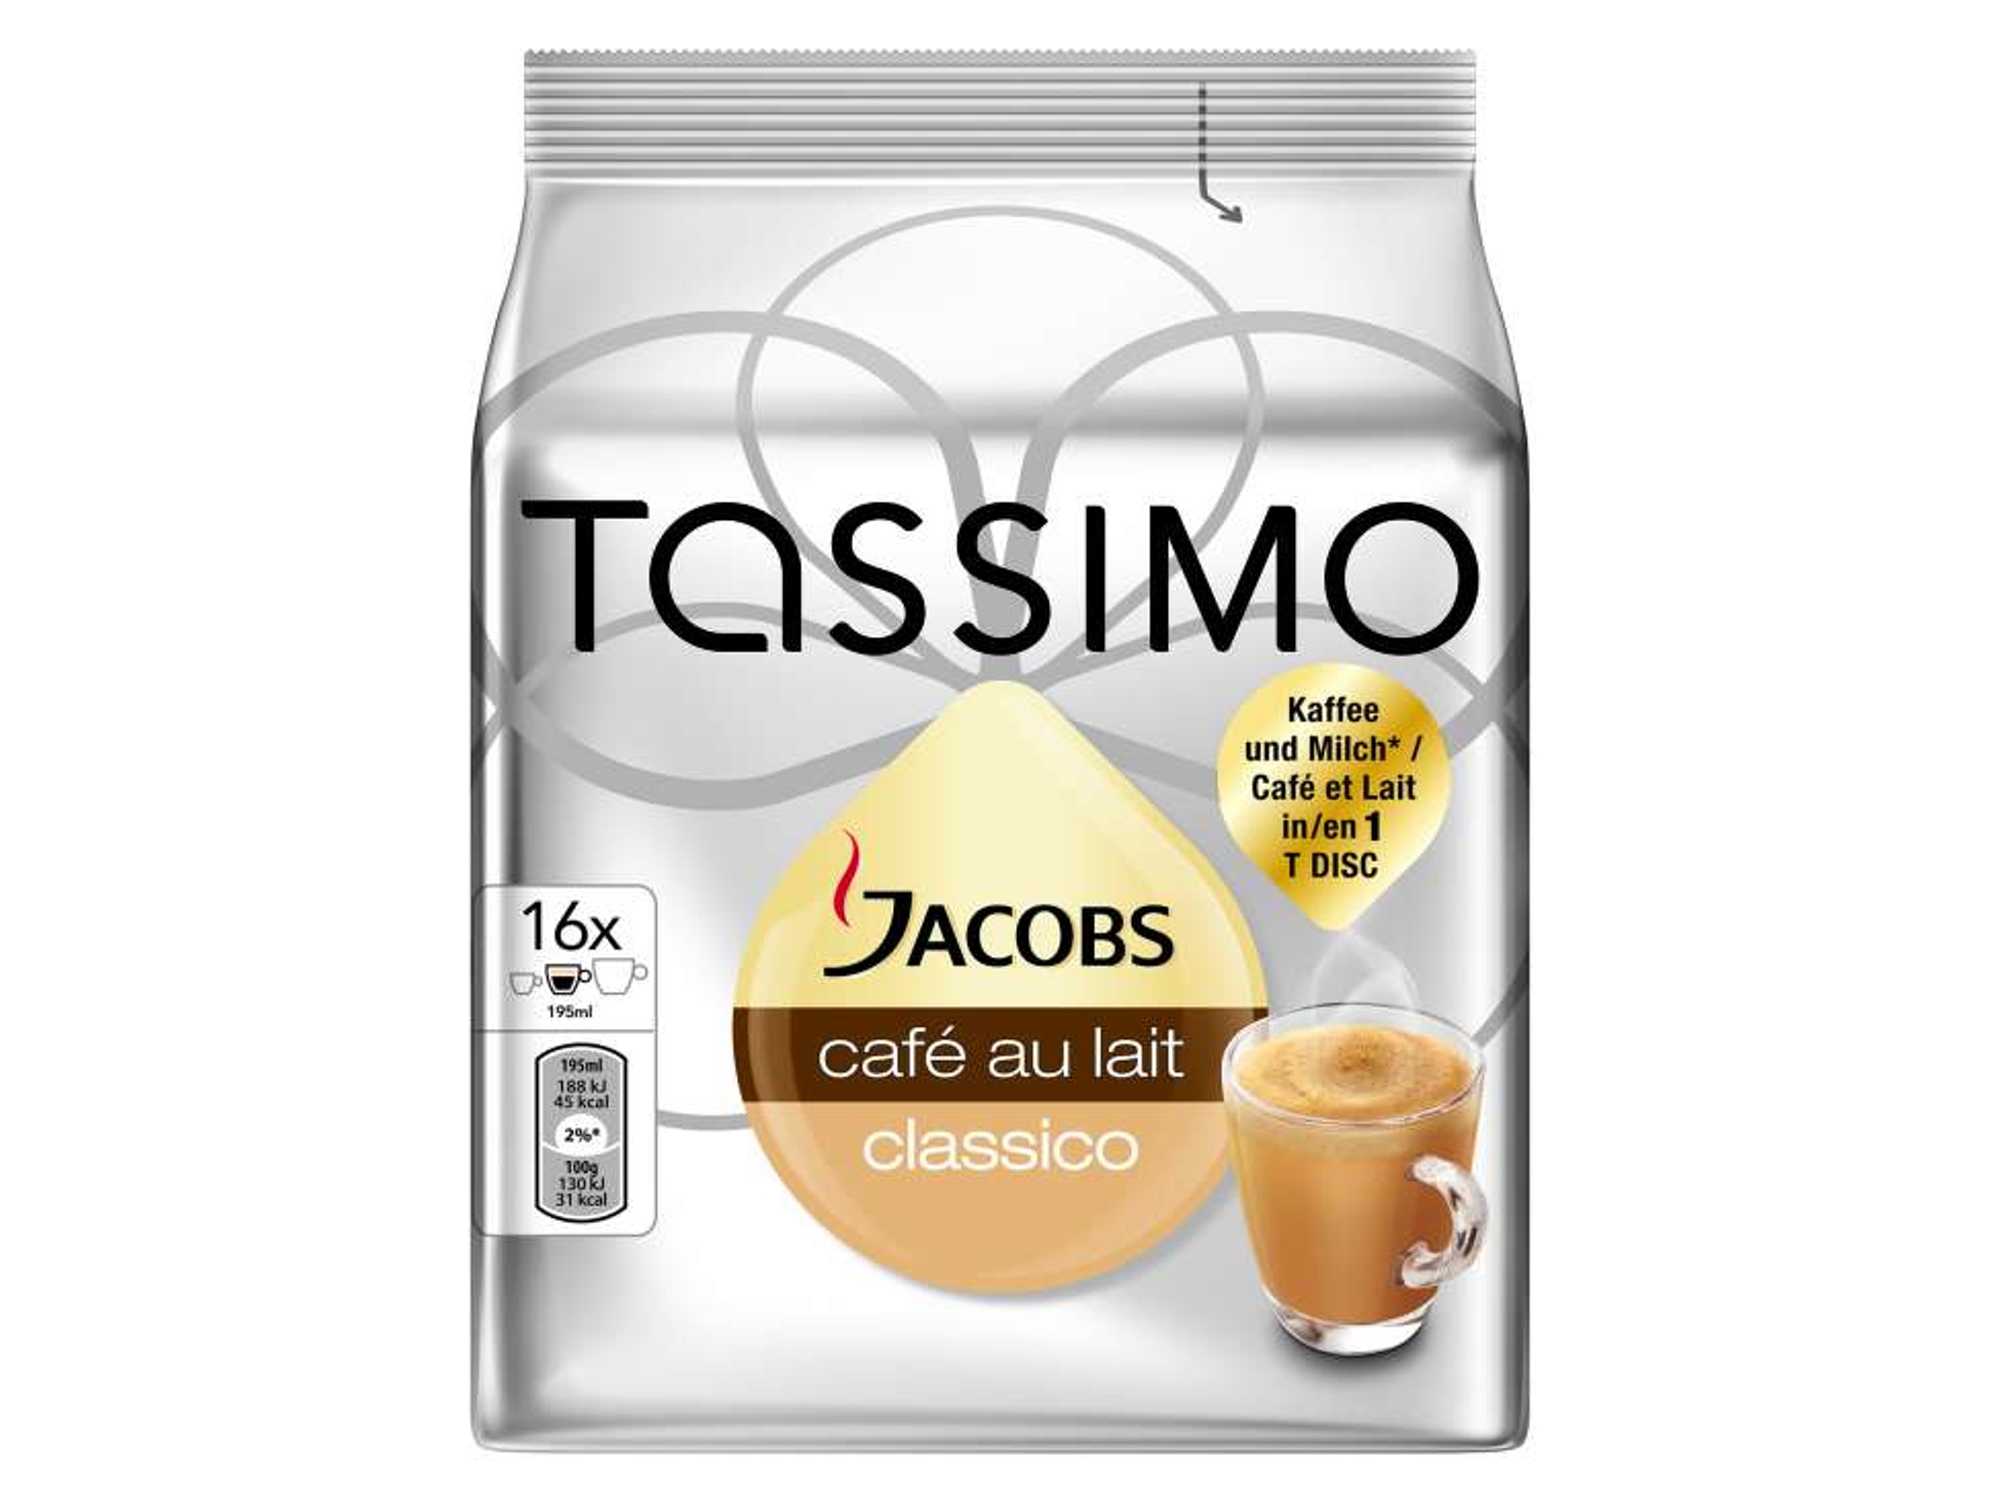 Cápsulas T DISC de Tassimo